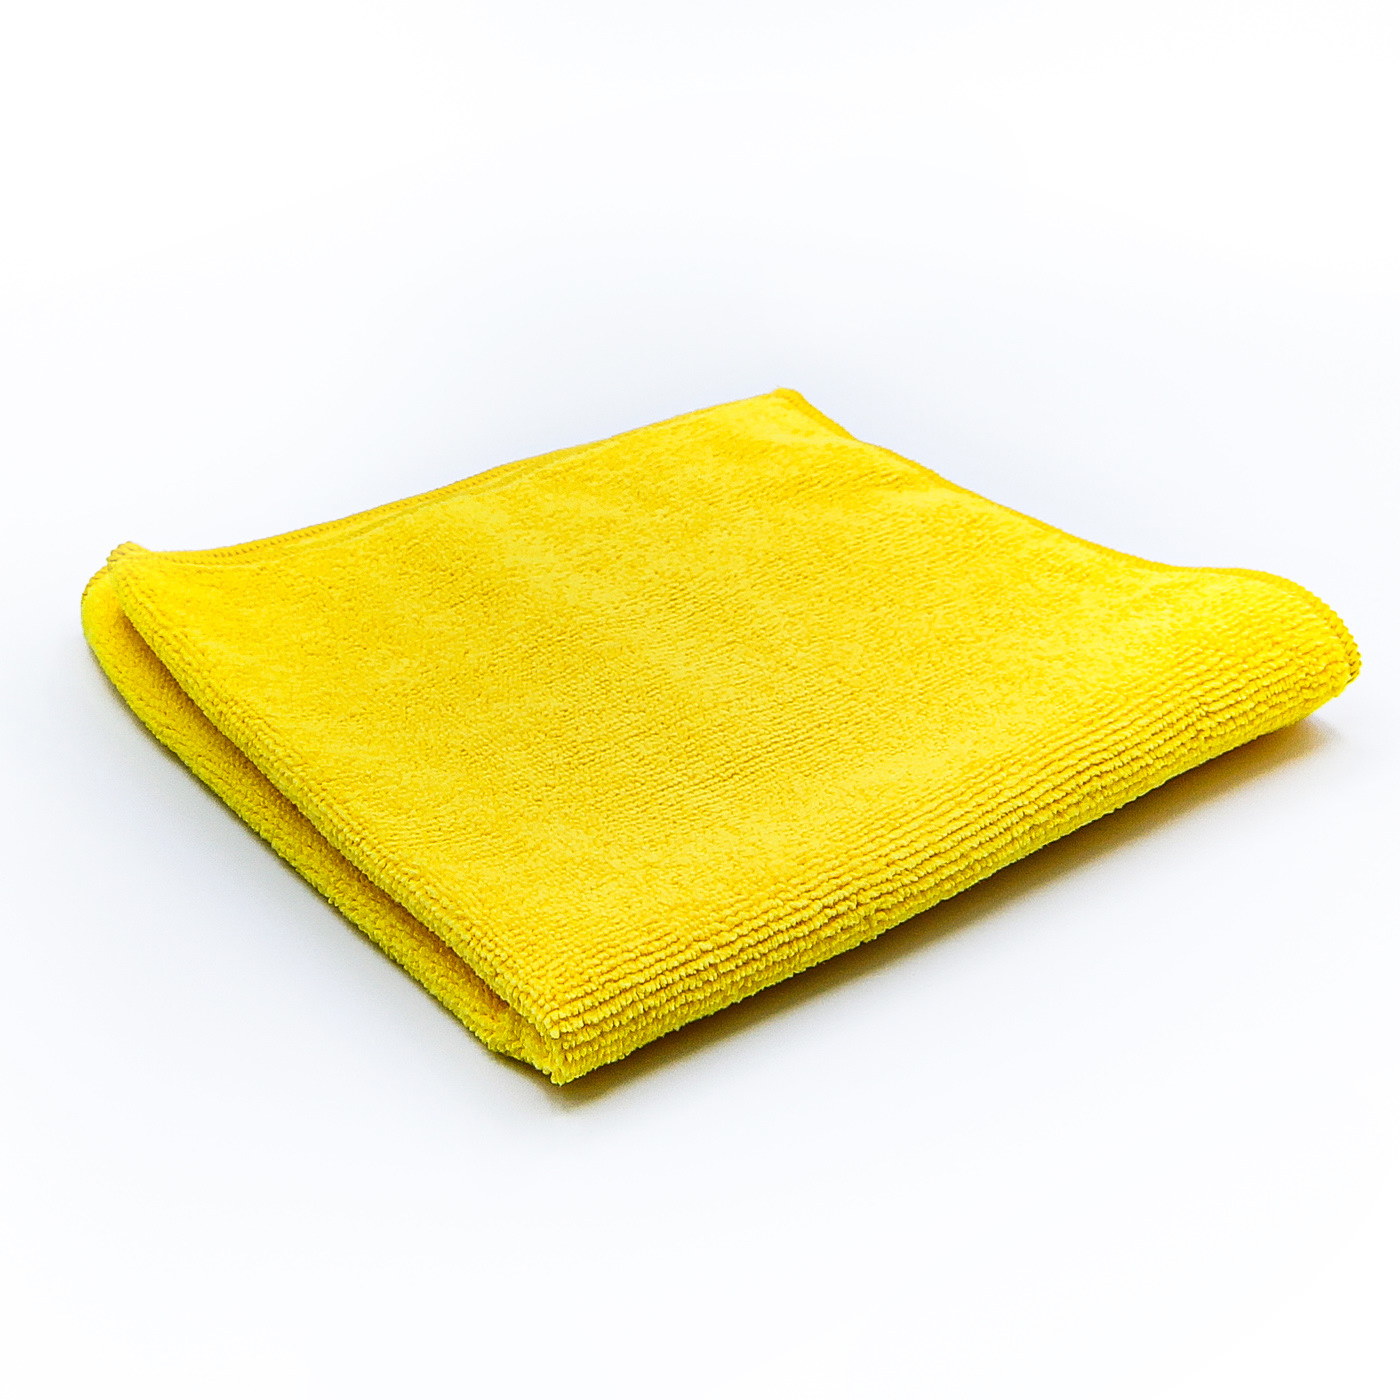 Lavette microfibre jaune tissée, entretien- nettoyage-qualité